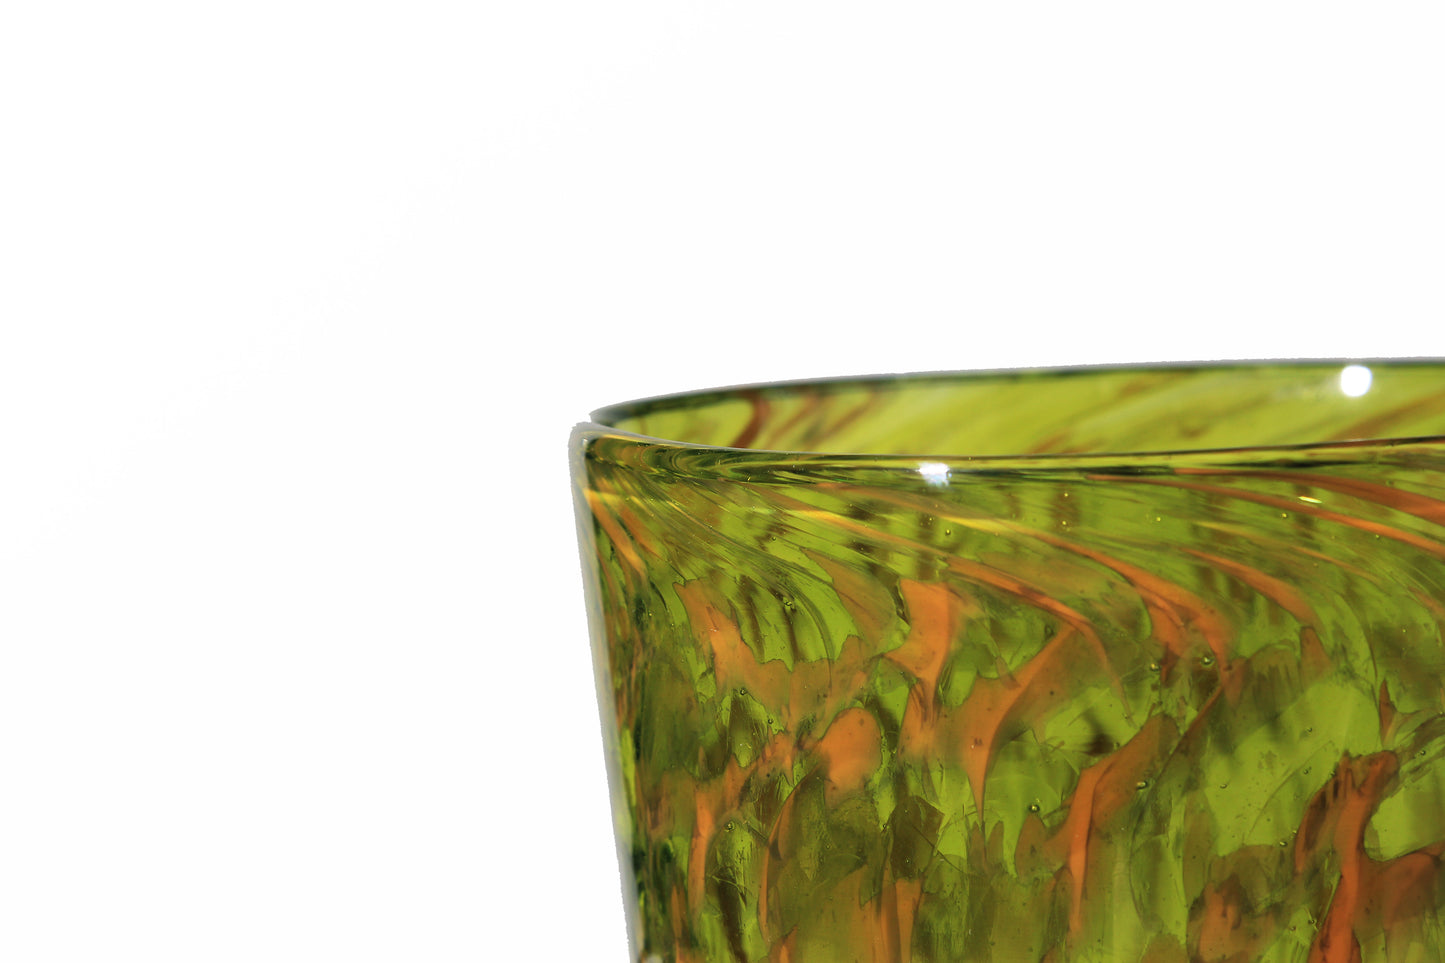 Pint Glass - Green & Gold